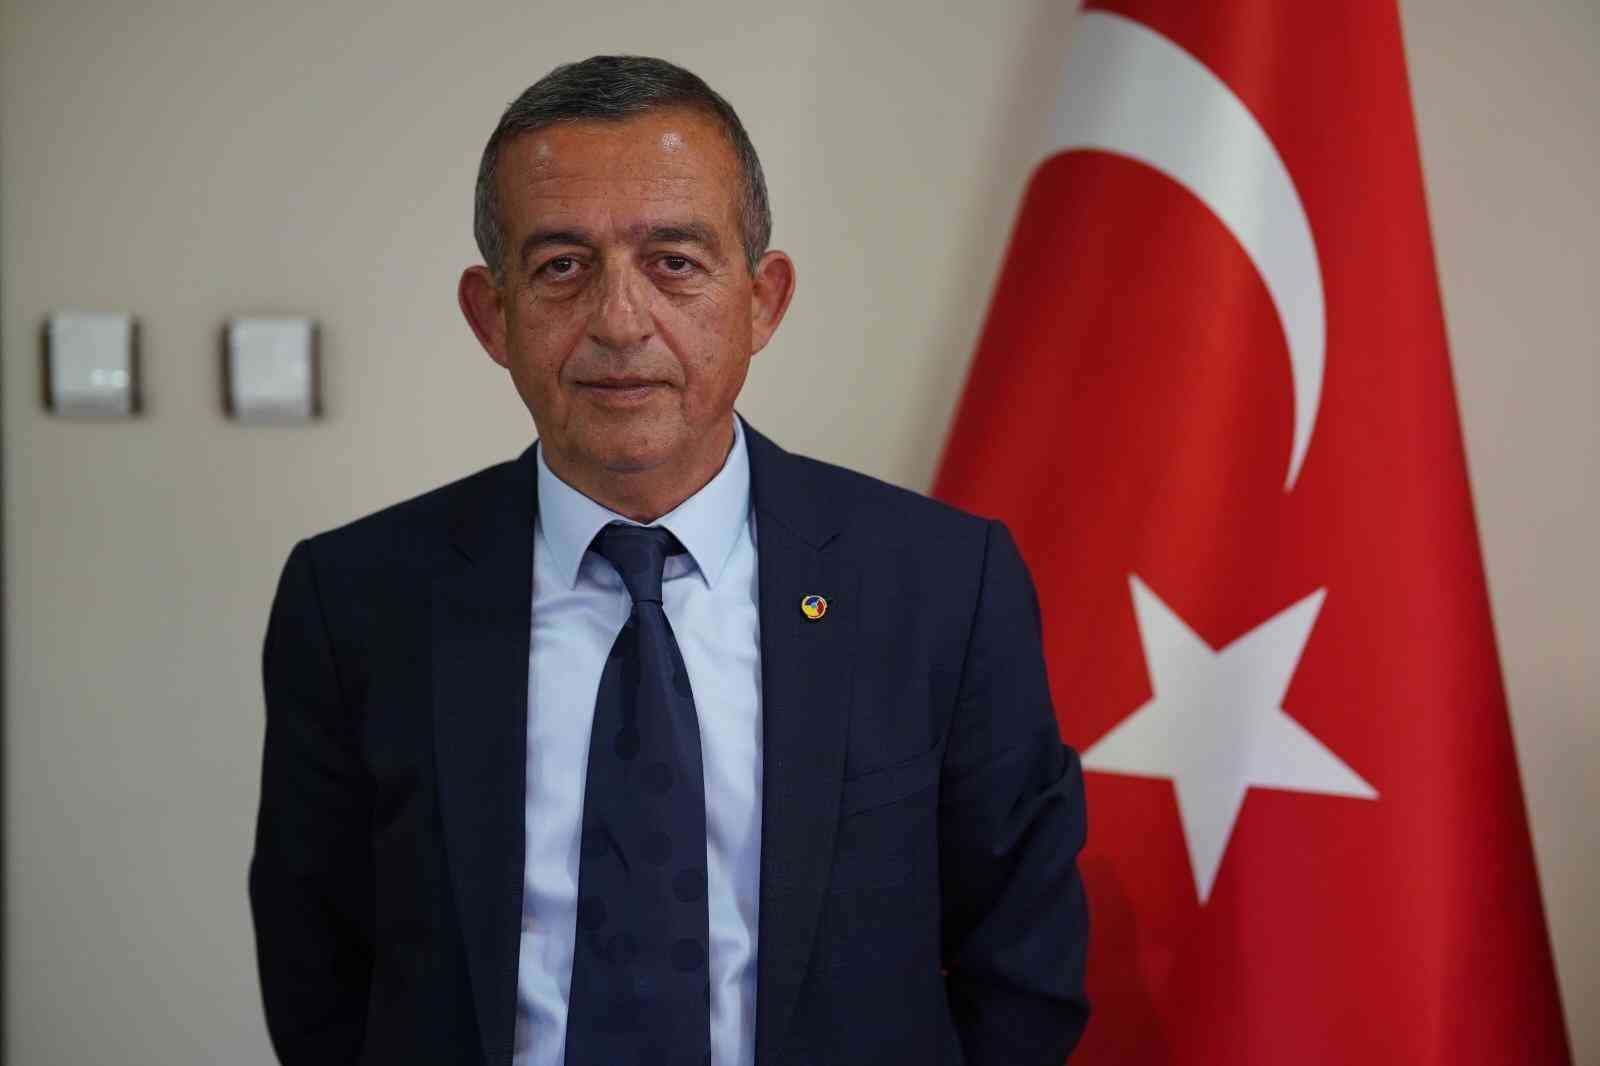 Başkan Tanoğlu, 2022’nin güzel bir yıl olması temennisinde bulundu #erzincan